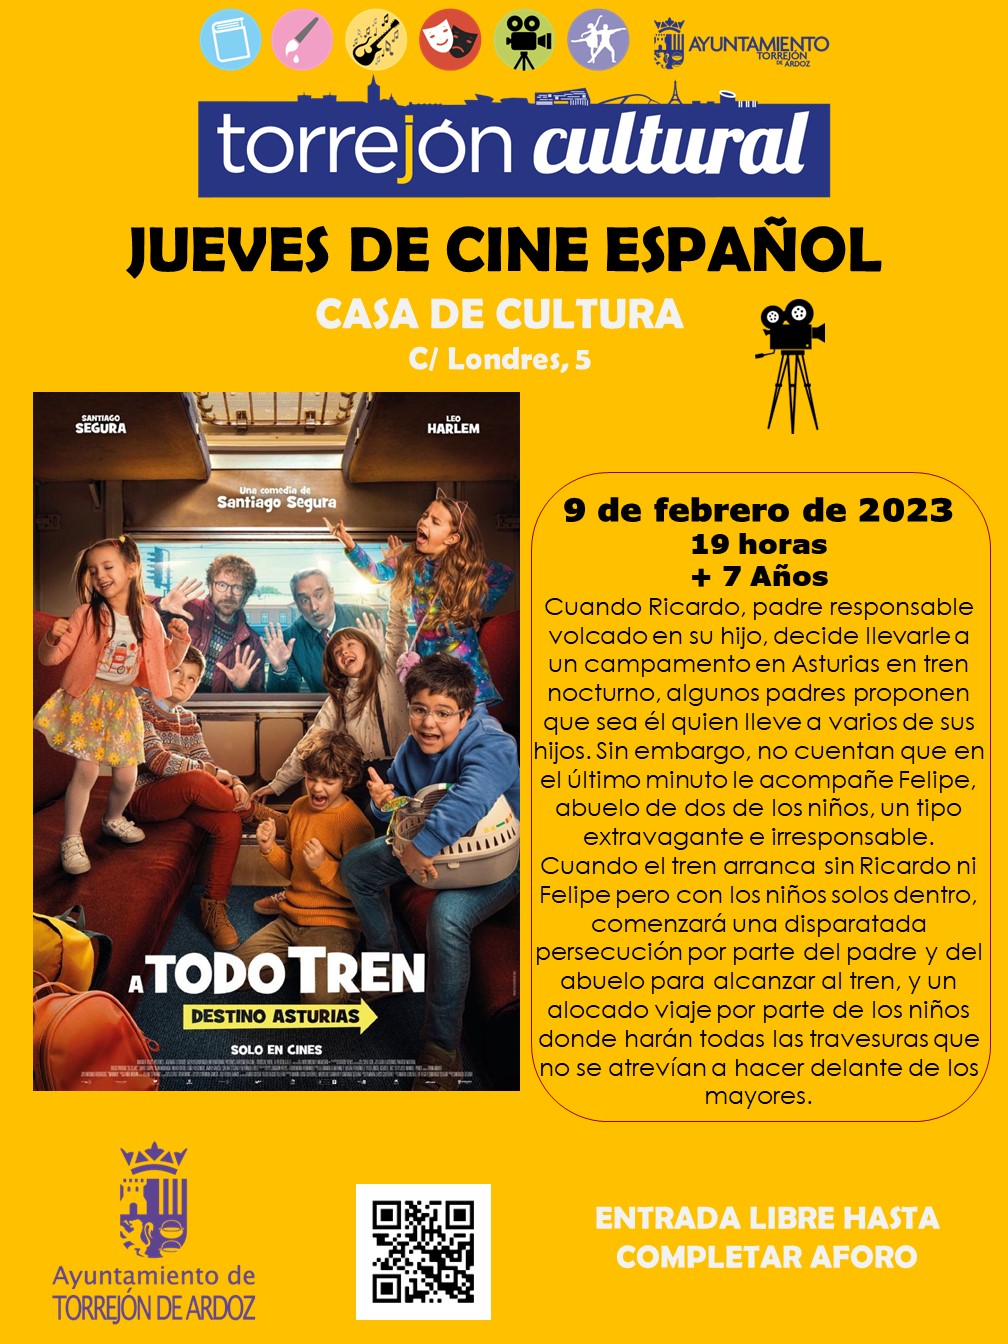 Jueves de Cine español - A todo tren: destino Asturias